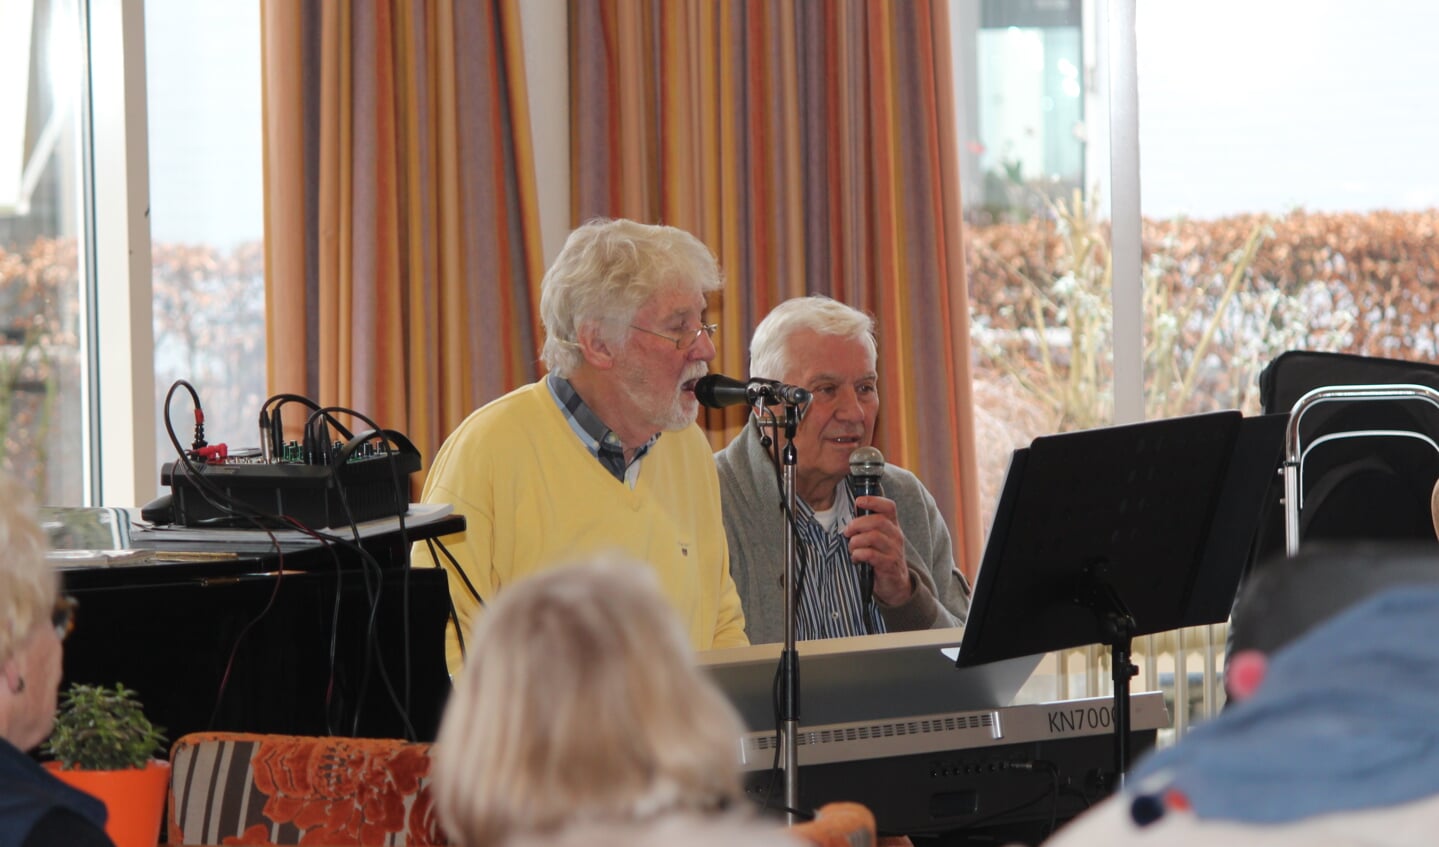 Ignace en Rienk bezorgen senioren in De Biltse Hof een gezellige middag.